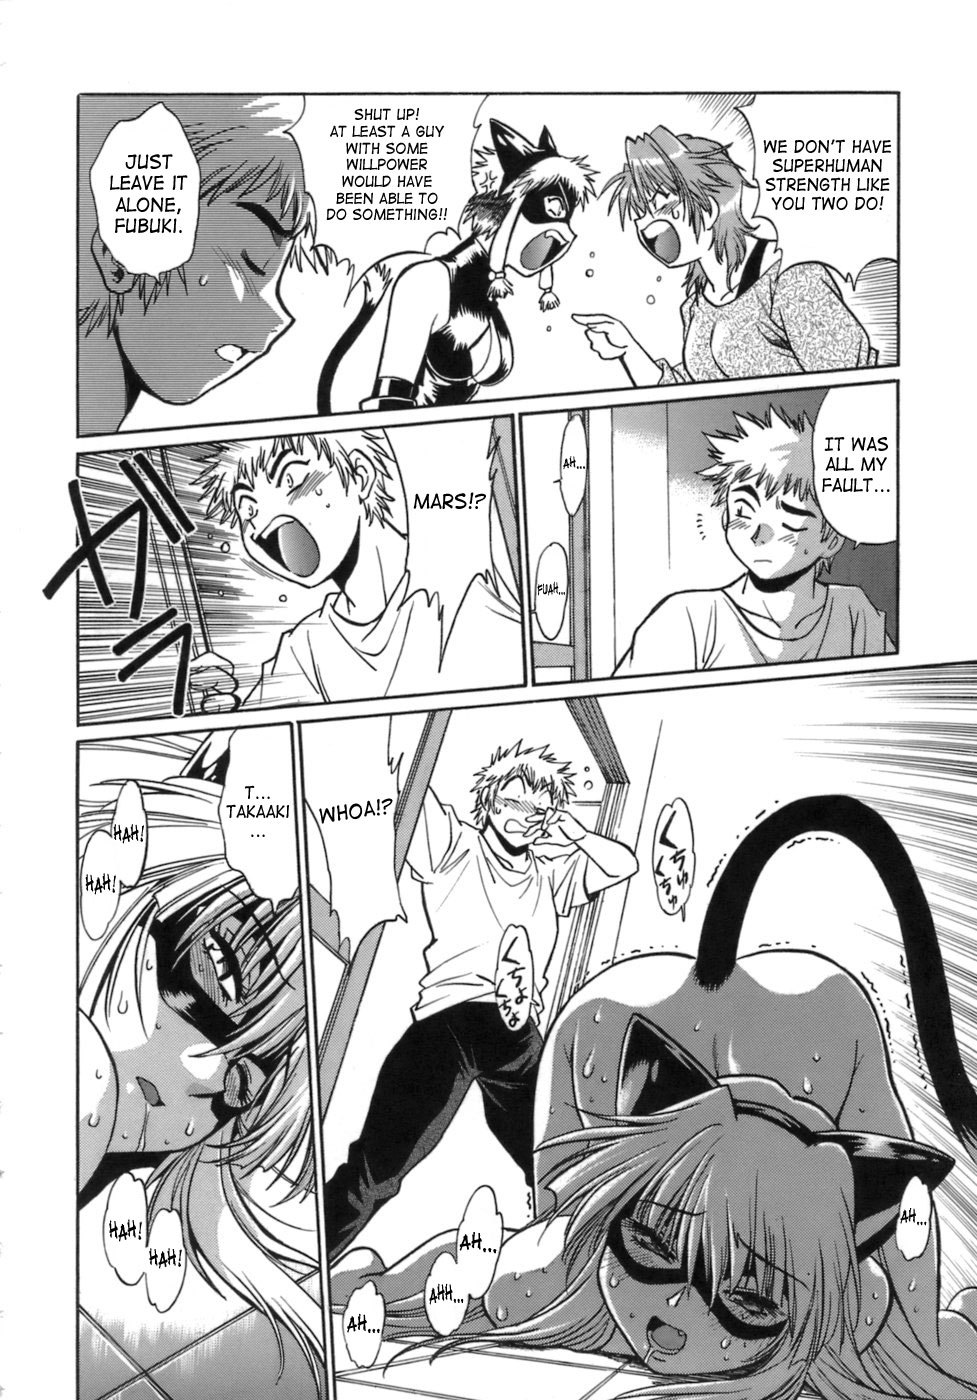 Tail Chaser Vol.1 179 hentai manga